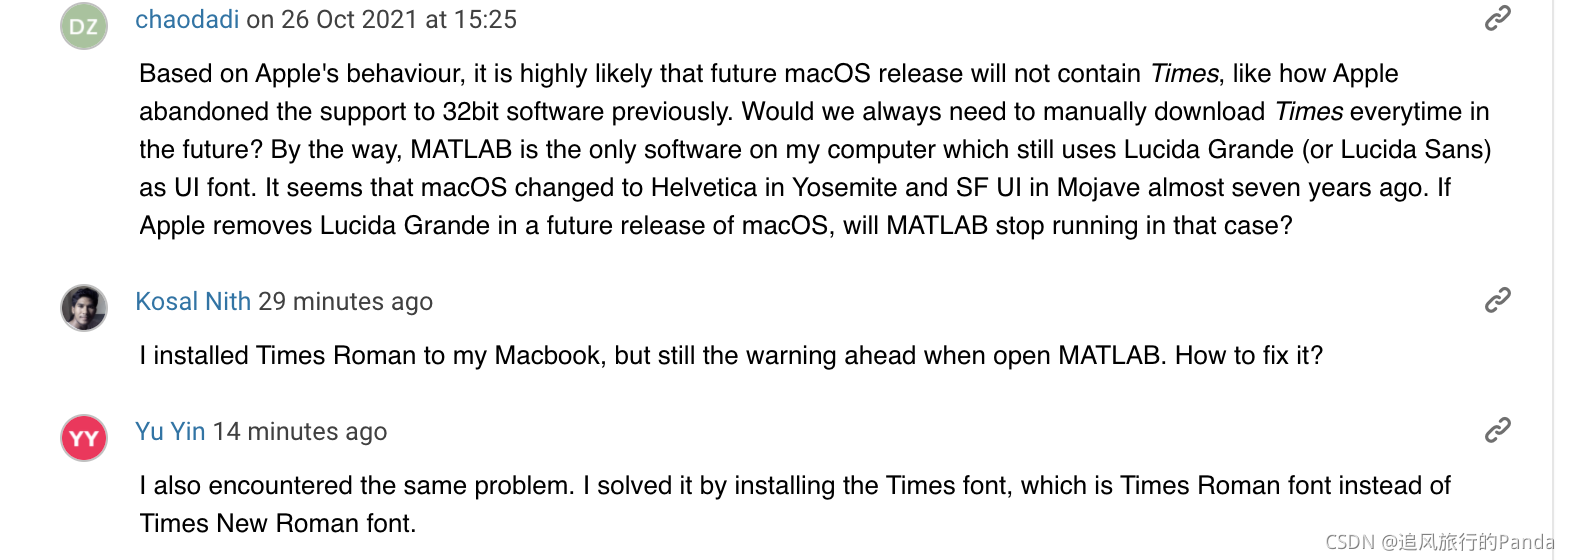 关于mac os更新到monterey， MATLAB出现Warning: the font “Times“ is not available, so “Lucida Bright“ has